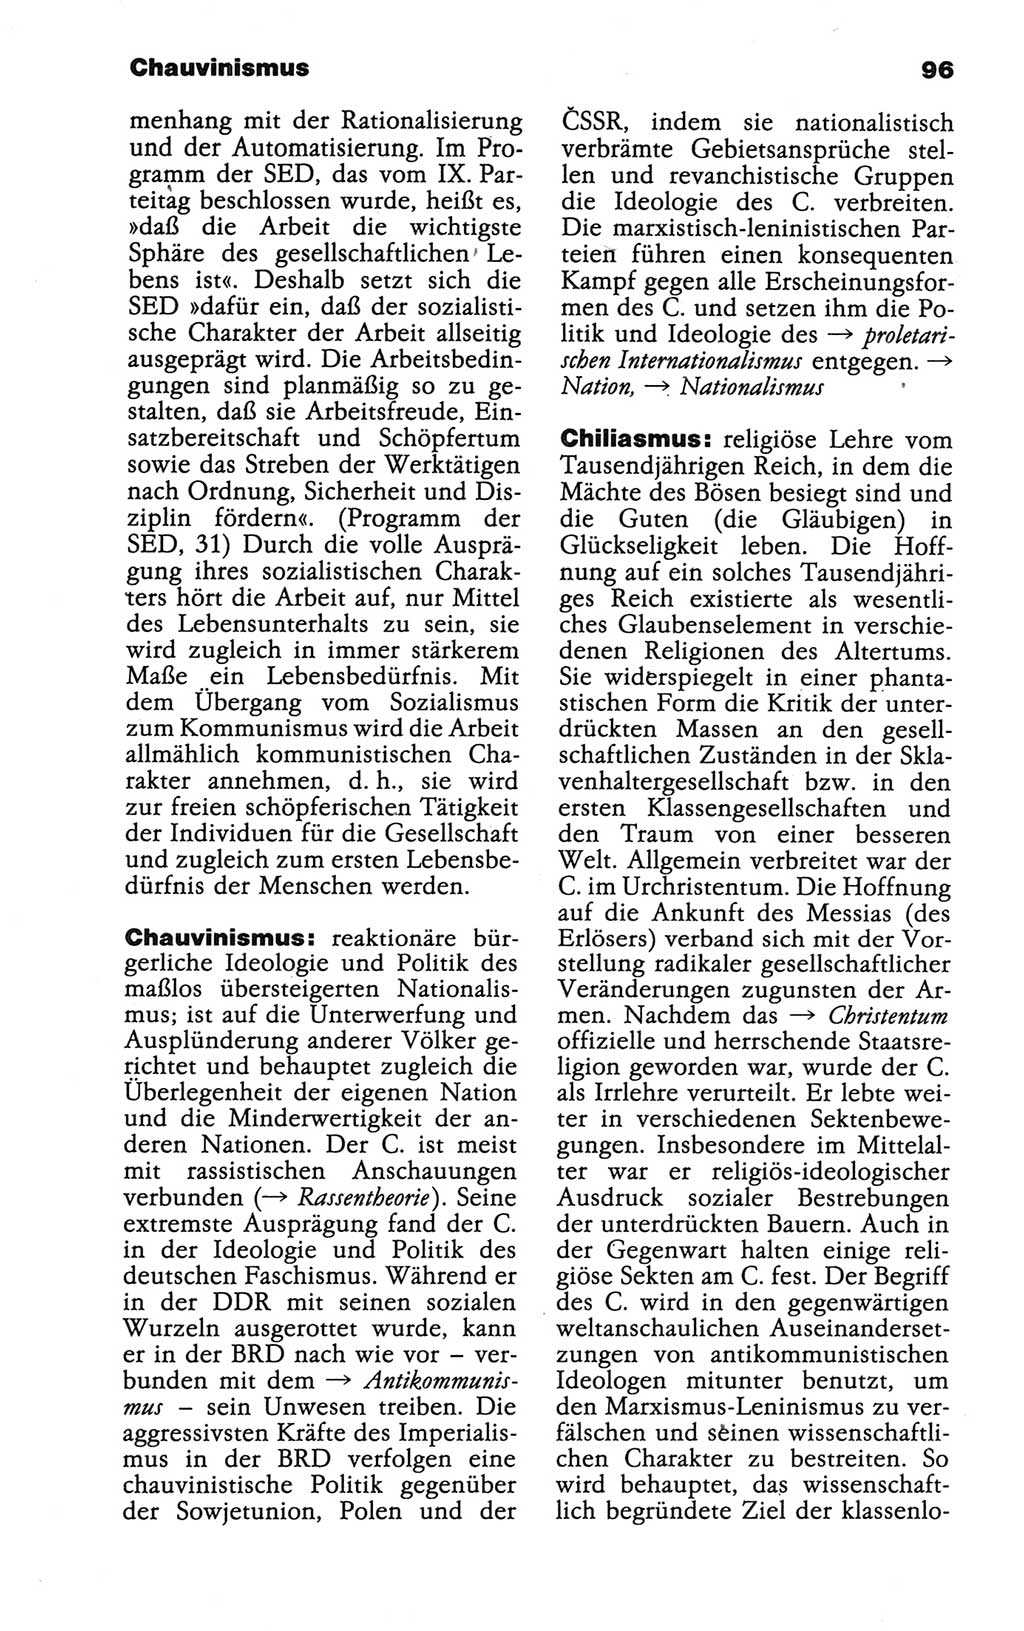 Wörterbuch der marxistisch-leninistischen Philosophie [Deutsche Demokratische Republik (DDR)] 1986, Seite 96 (Wb. ML Phil. DDR 1986, S. 96)